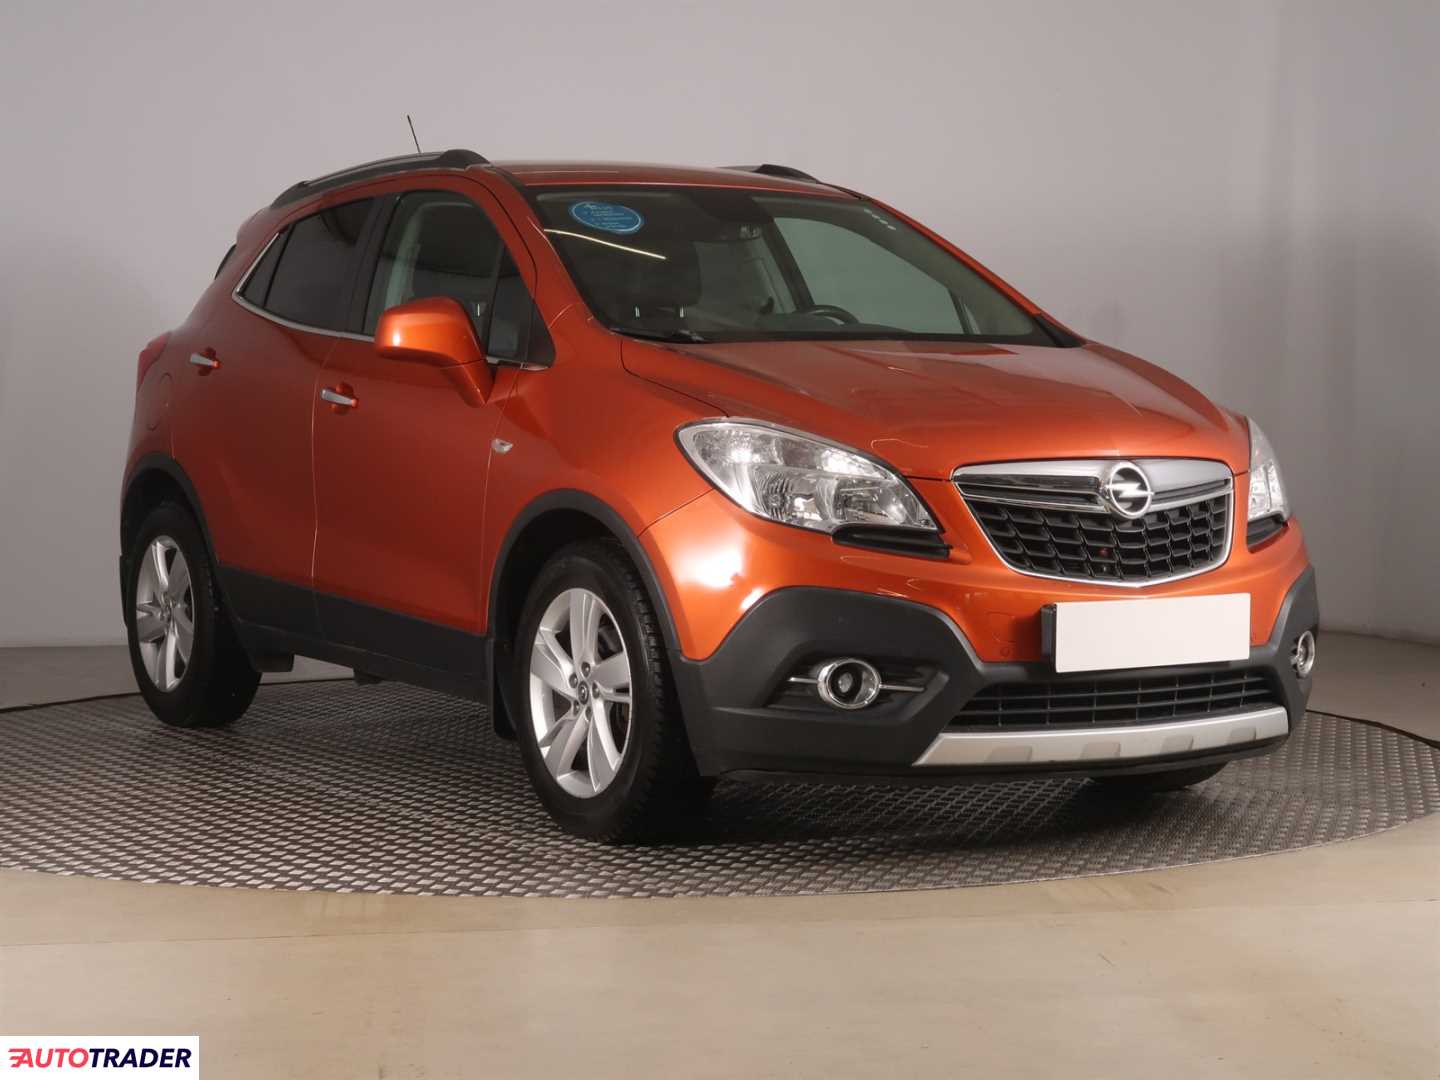 Opel Mokka 2014 1.4 138 KM